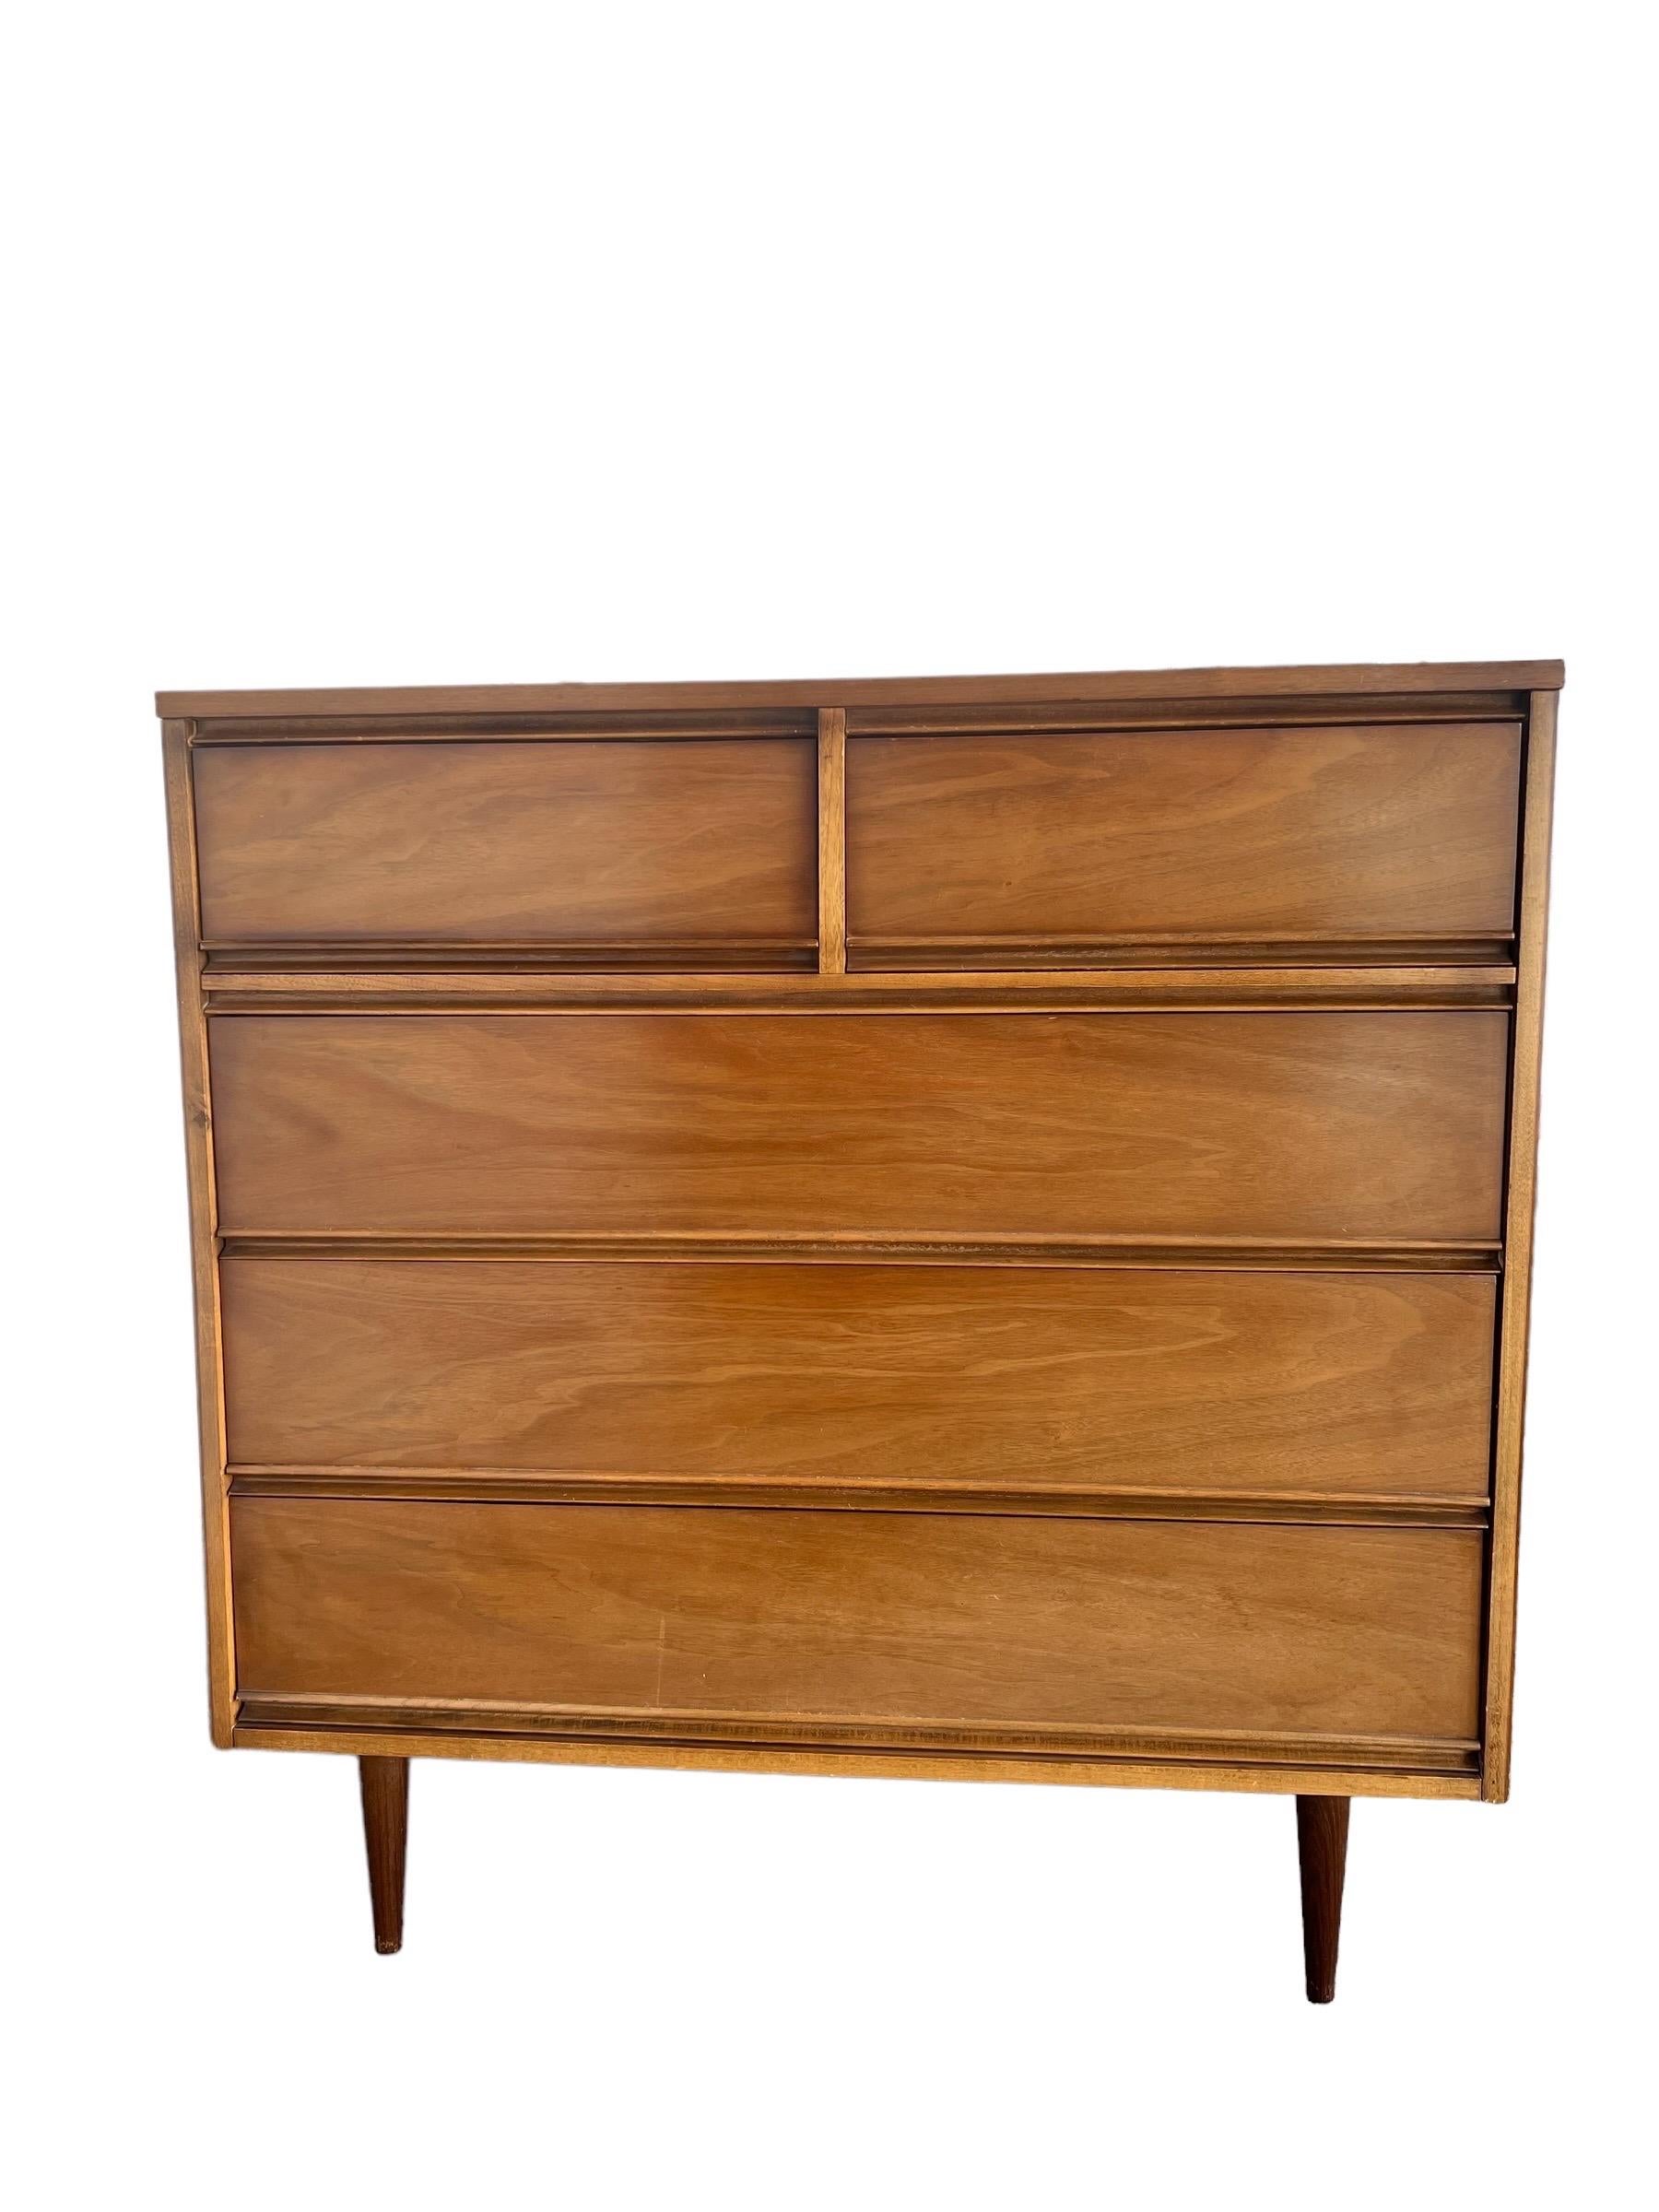 Vintage Mid-Century Modern Dresser Dovetailed Drawers Walnut 1